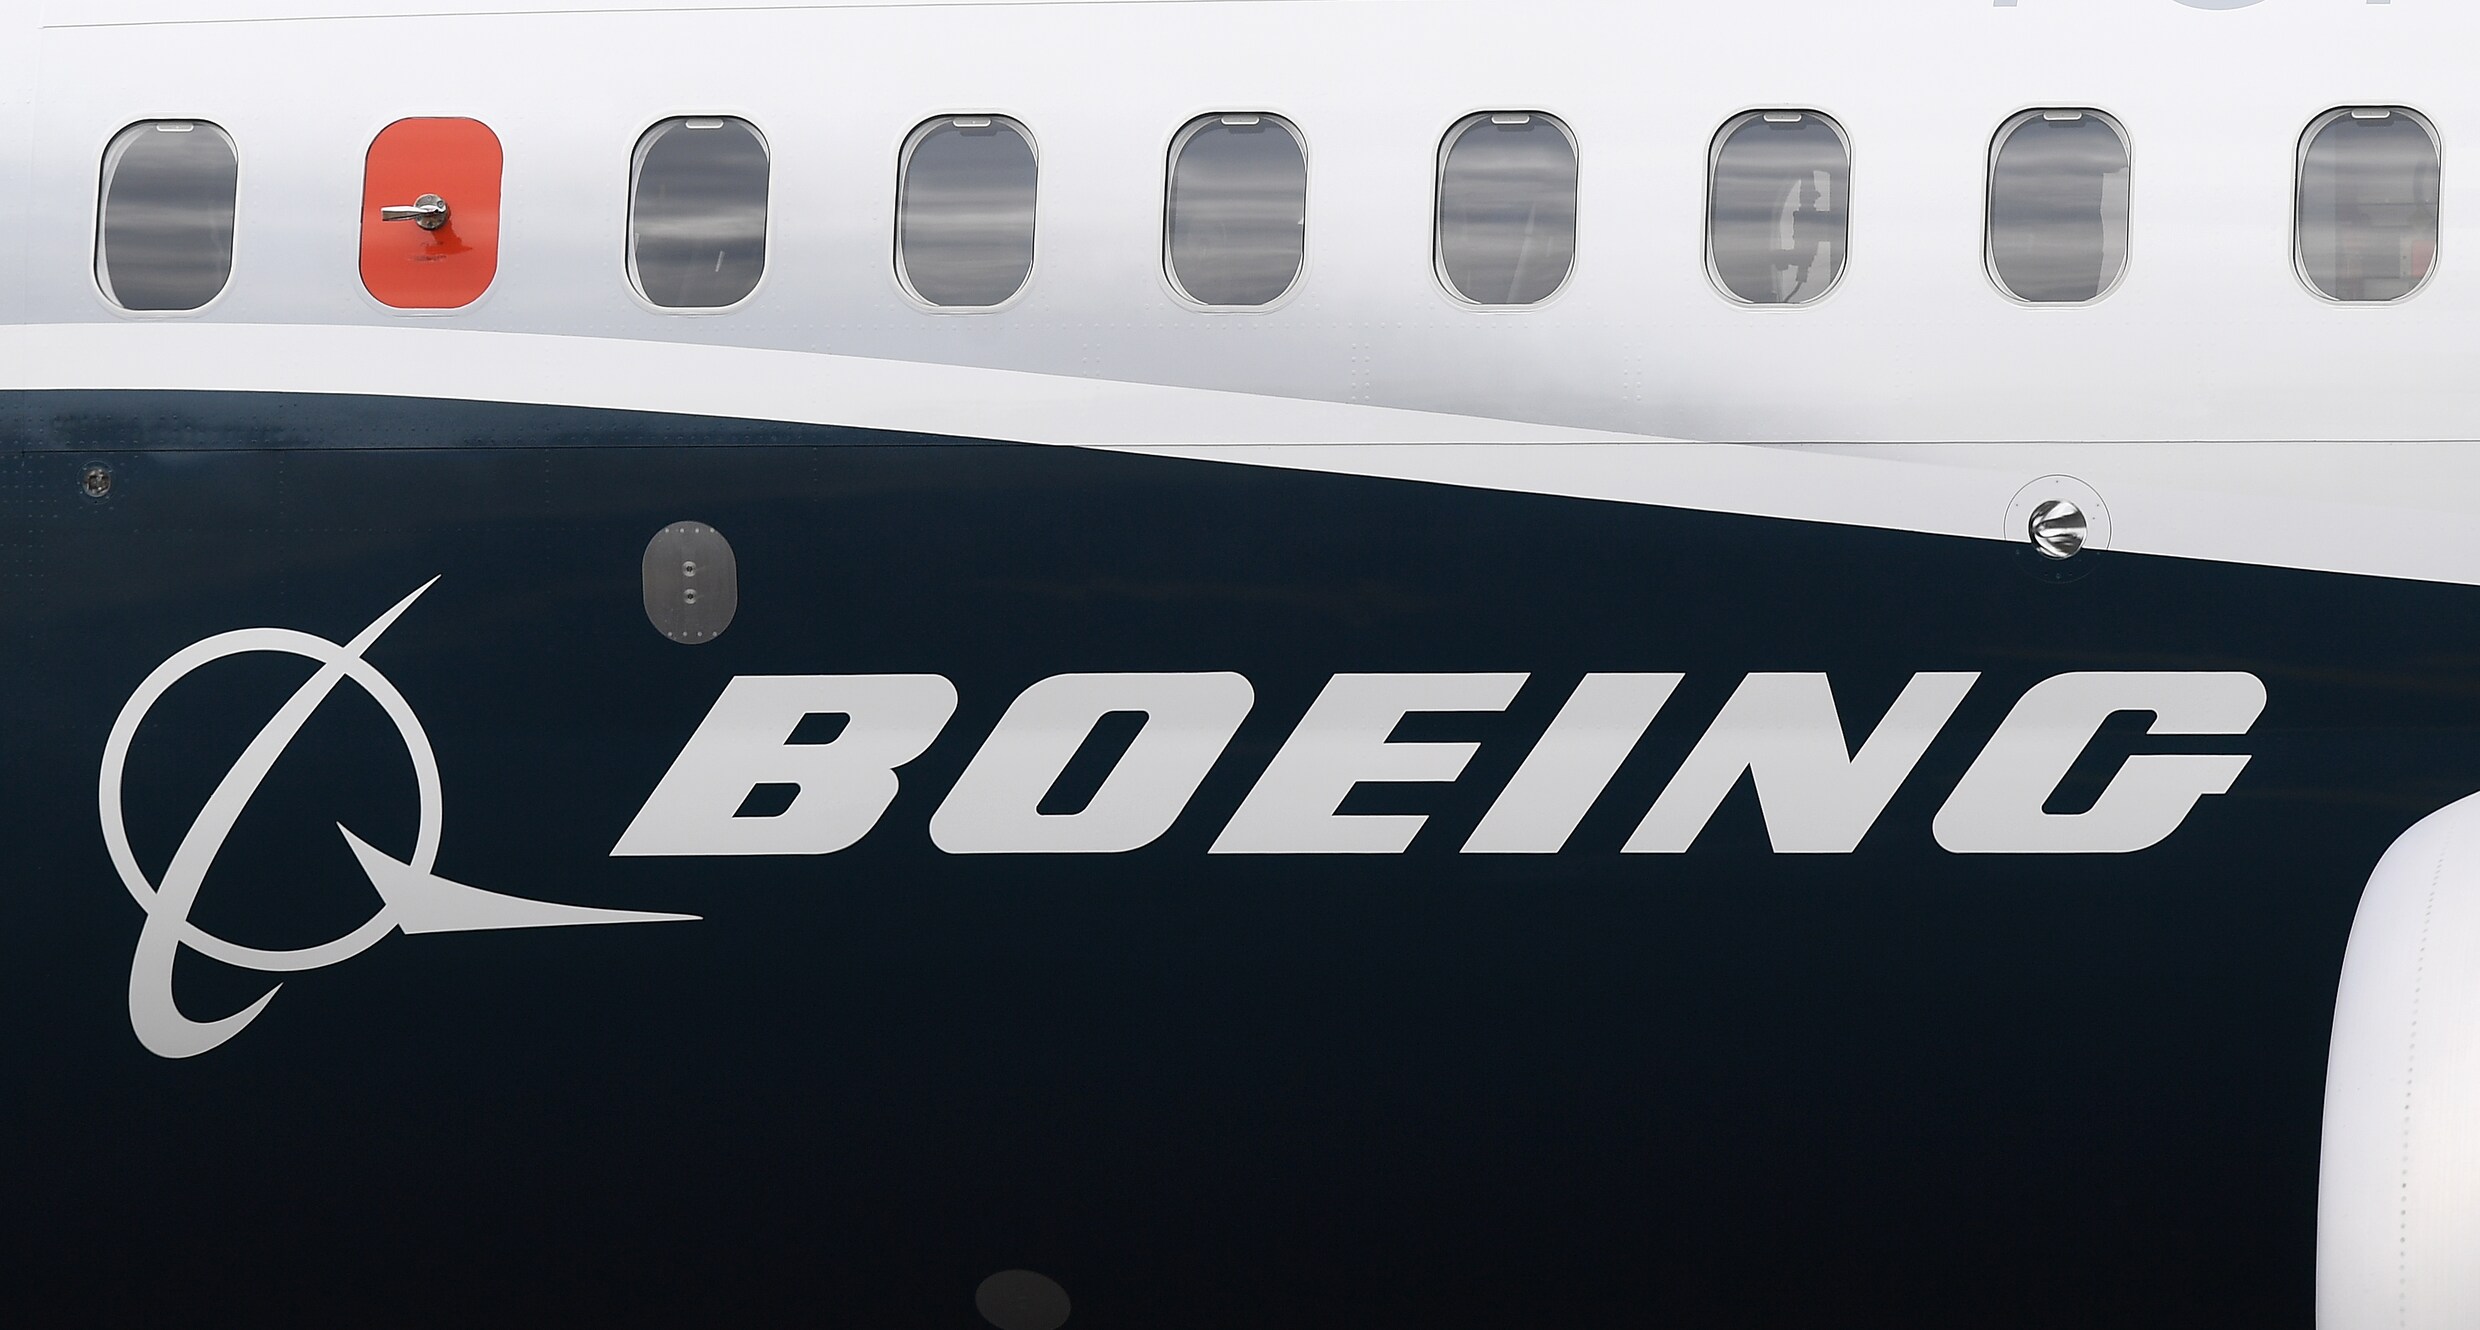 Familie slachtoffer klaagt Boeing aan voor crash